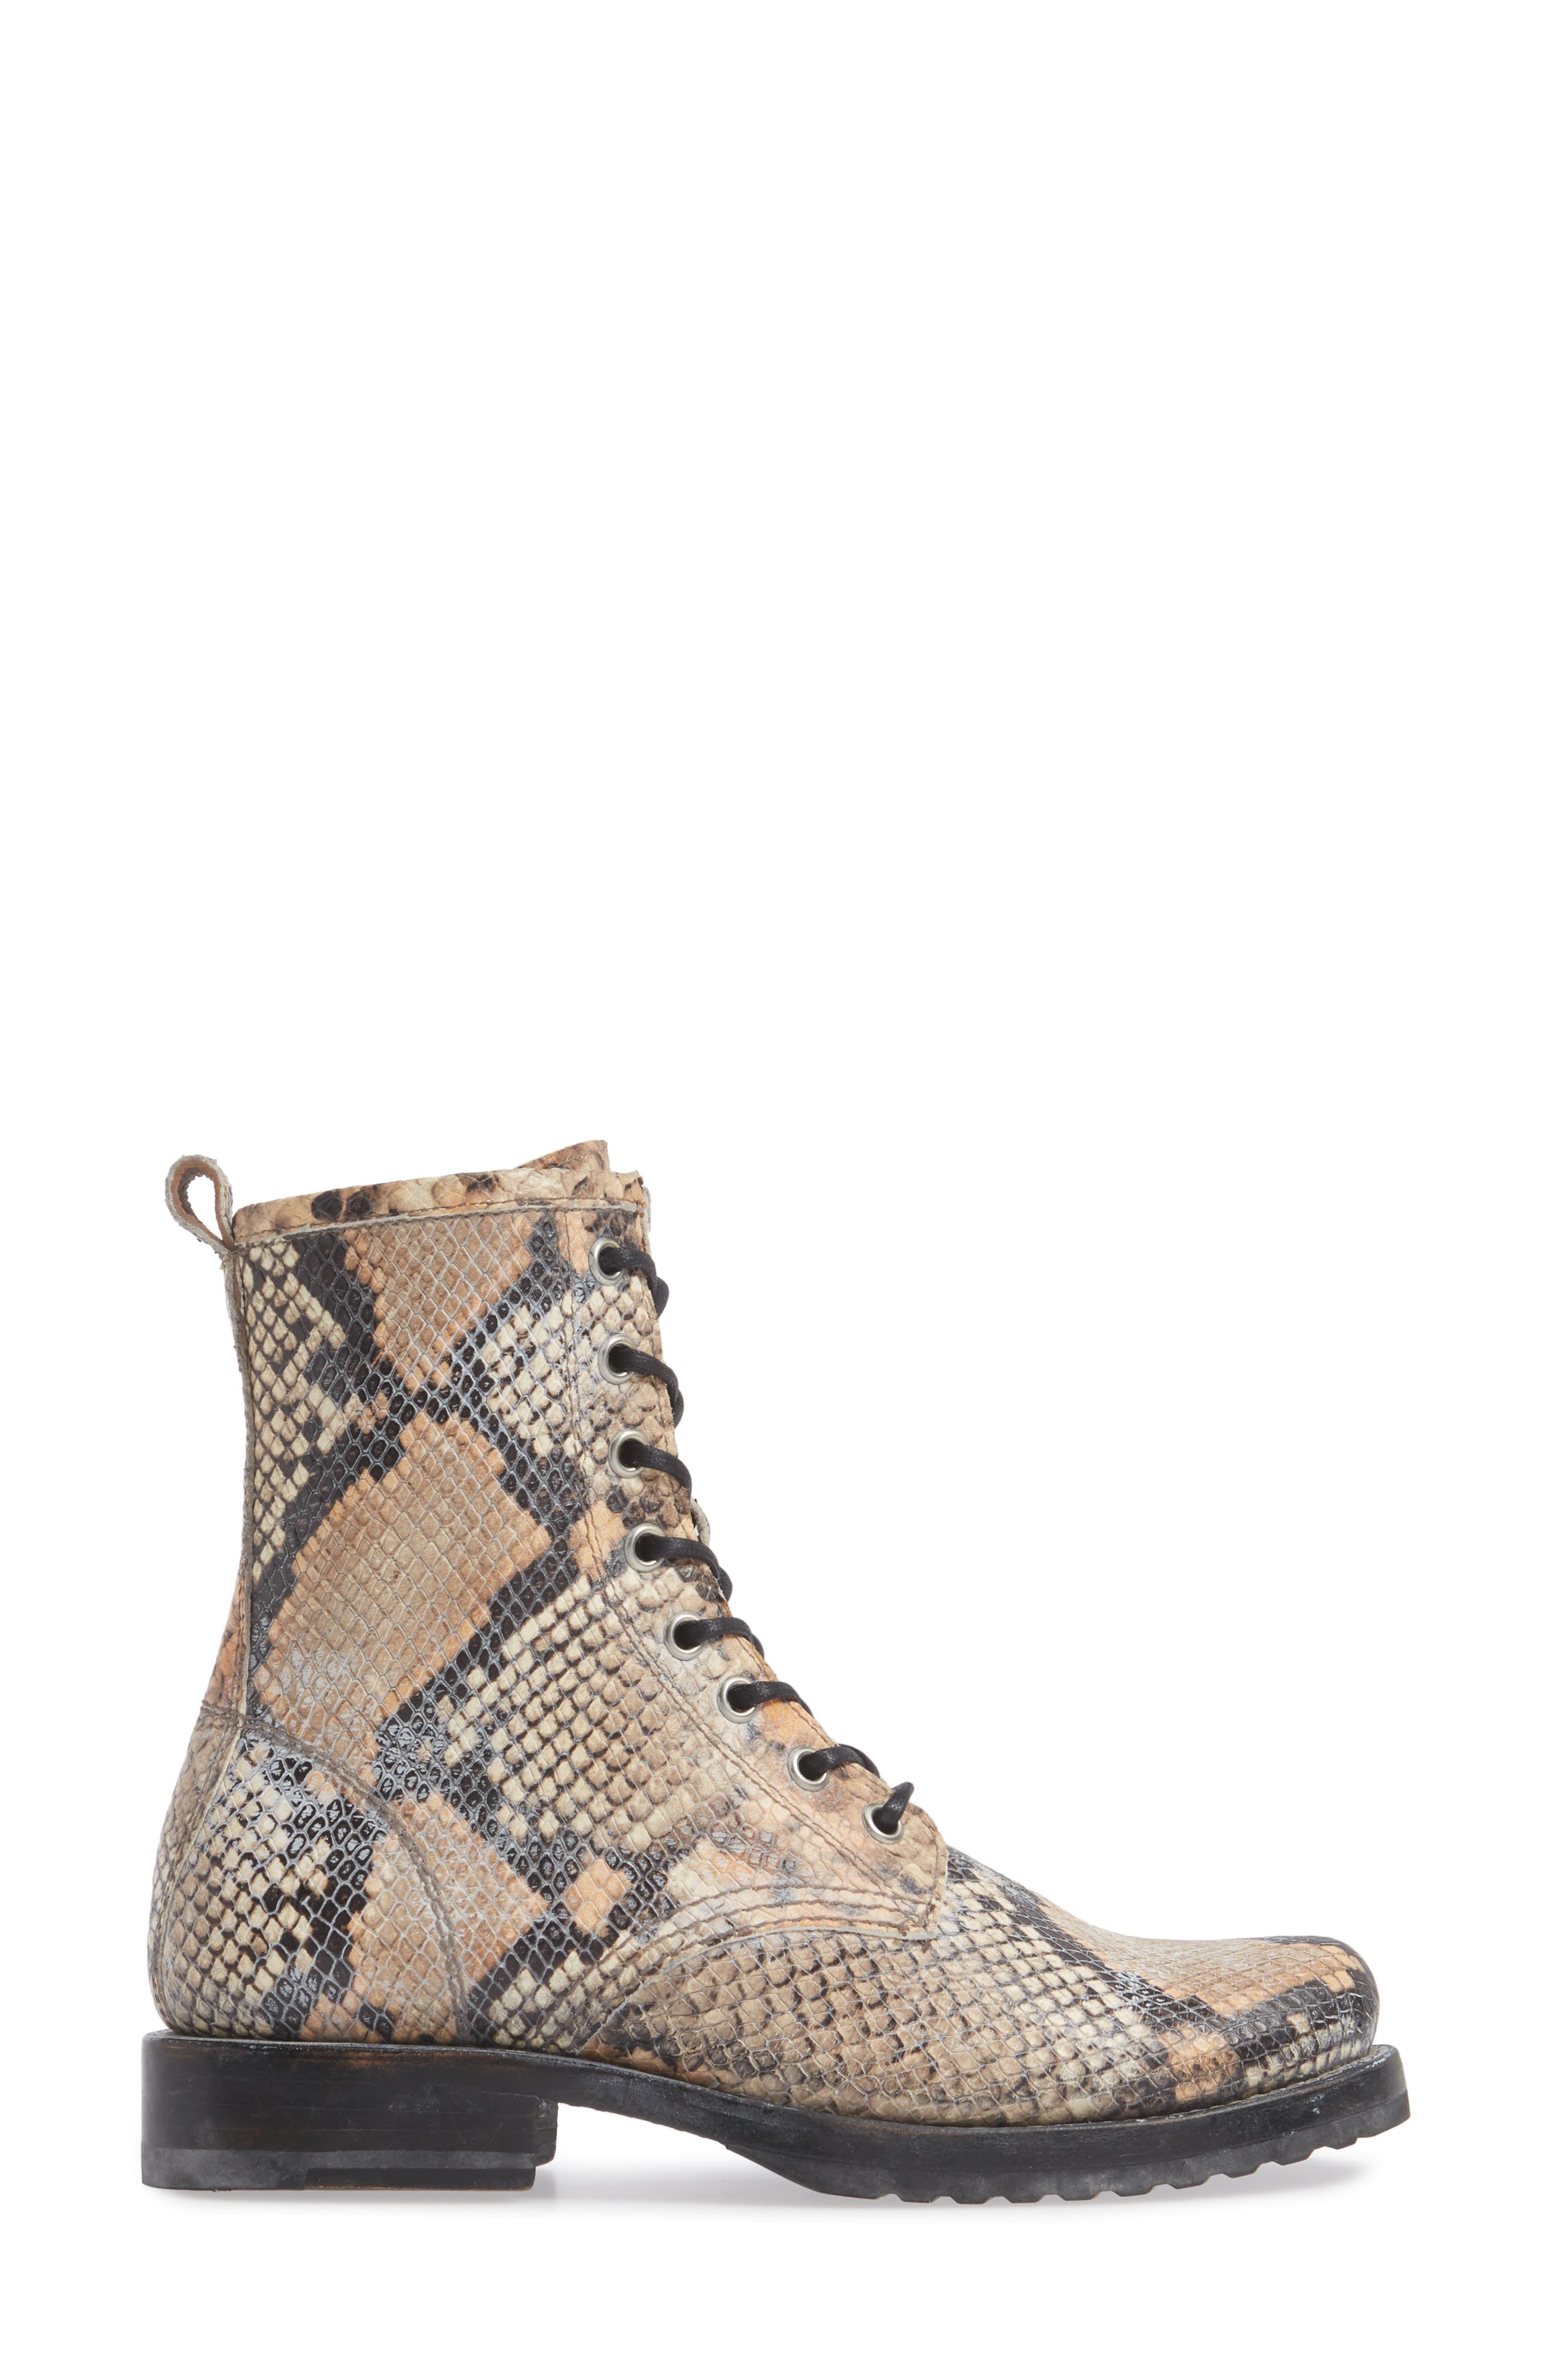 snakeskin combat boots